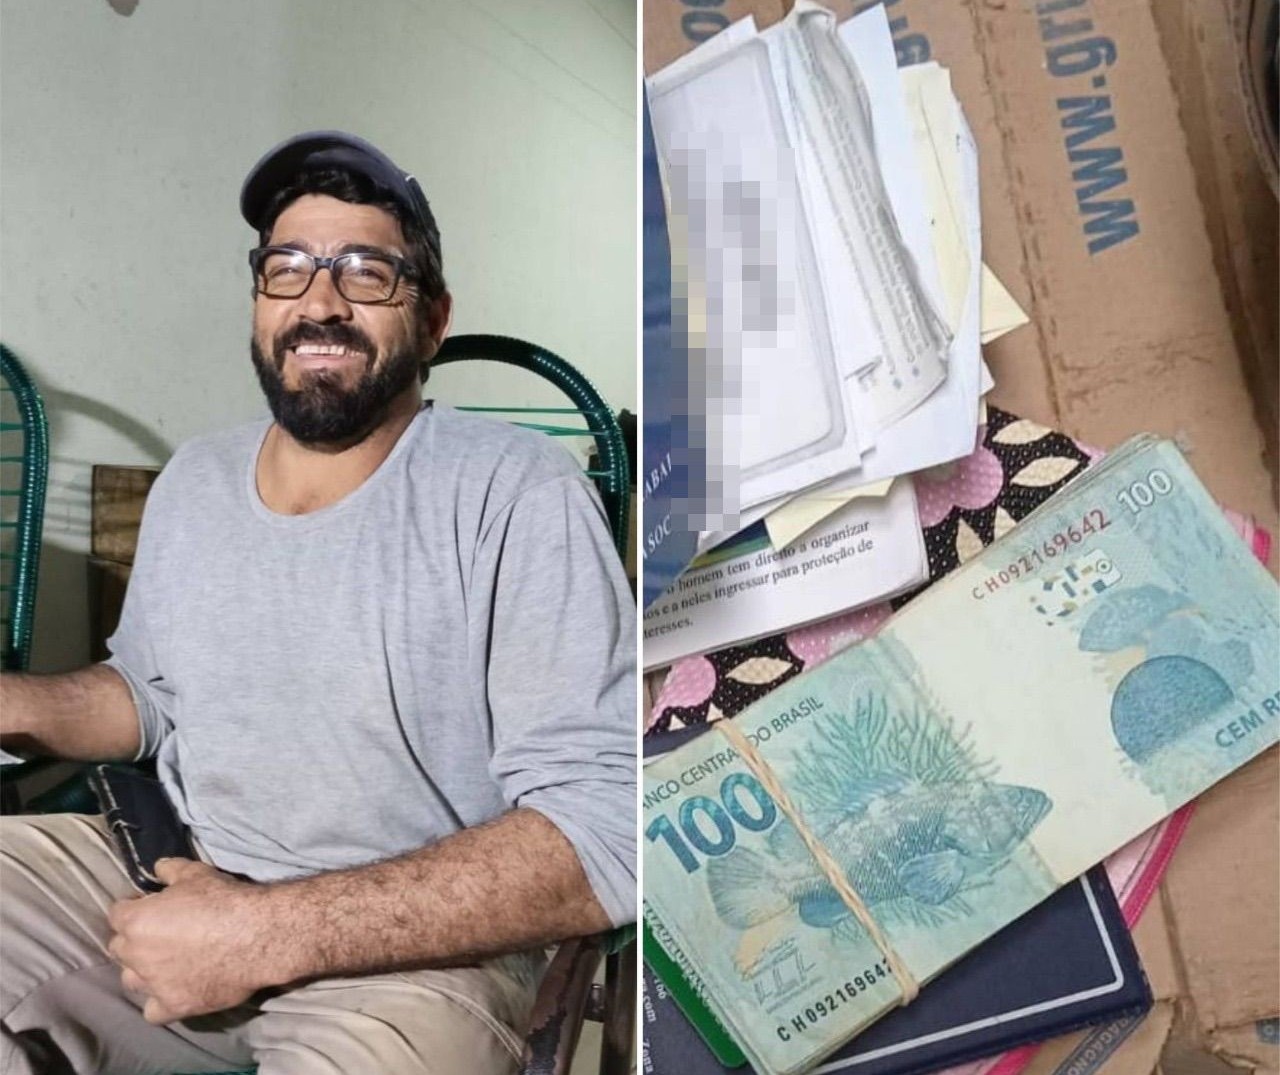 Pedreiro de Paiçandu que achou R$ 5,4 mil e devolveu estava sem trabalhar e com muitas dívidas: ‘água, luz e prestações atrasadas’